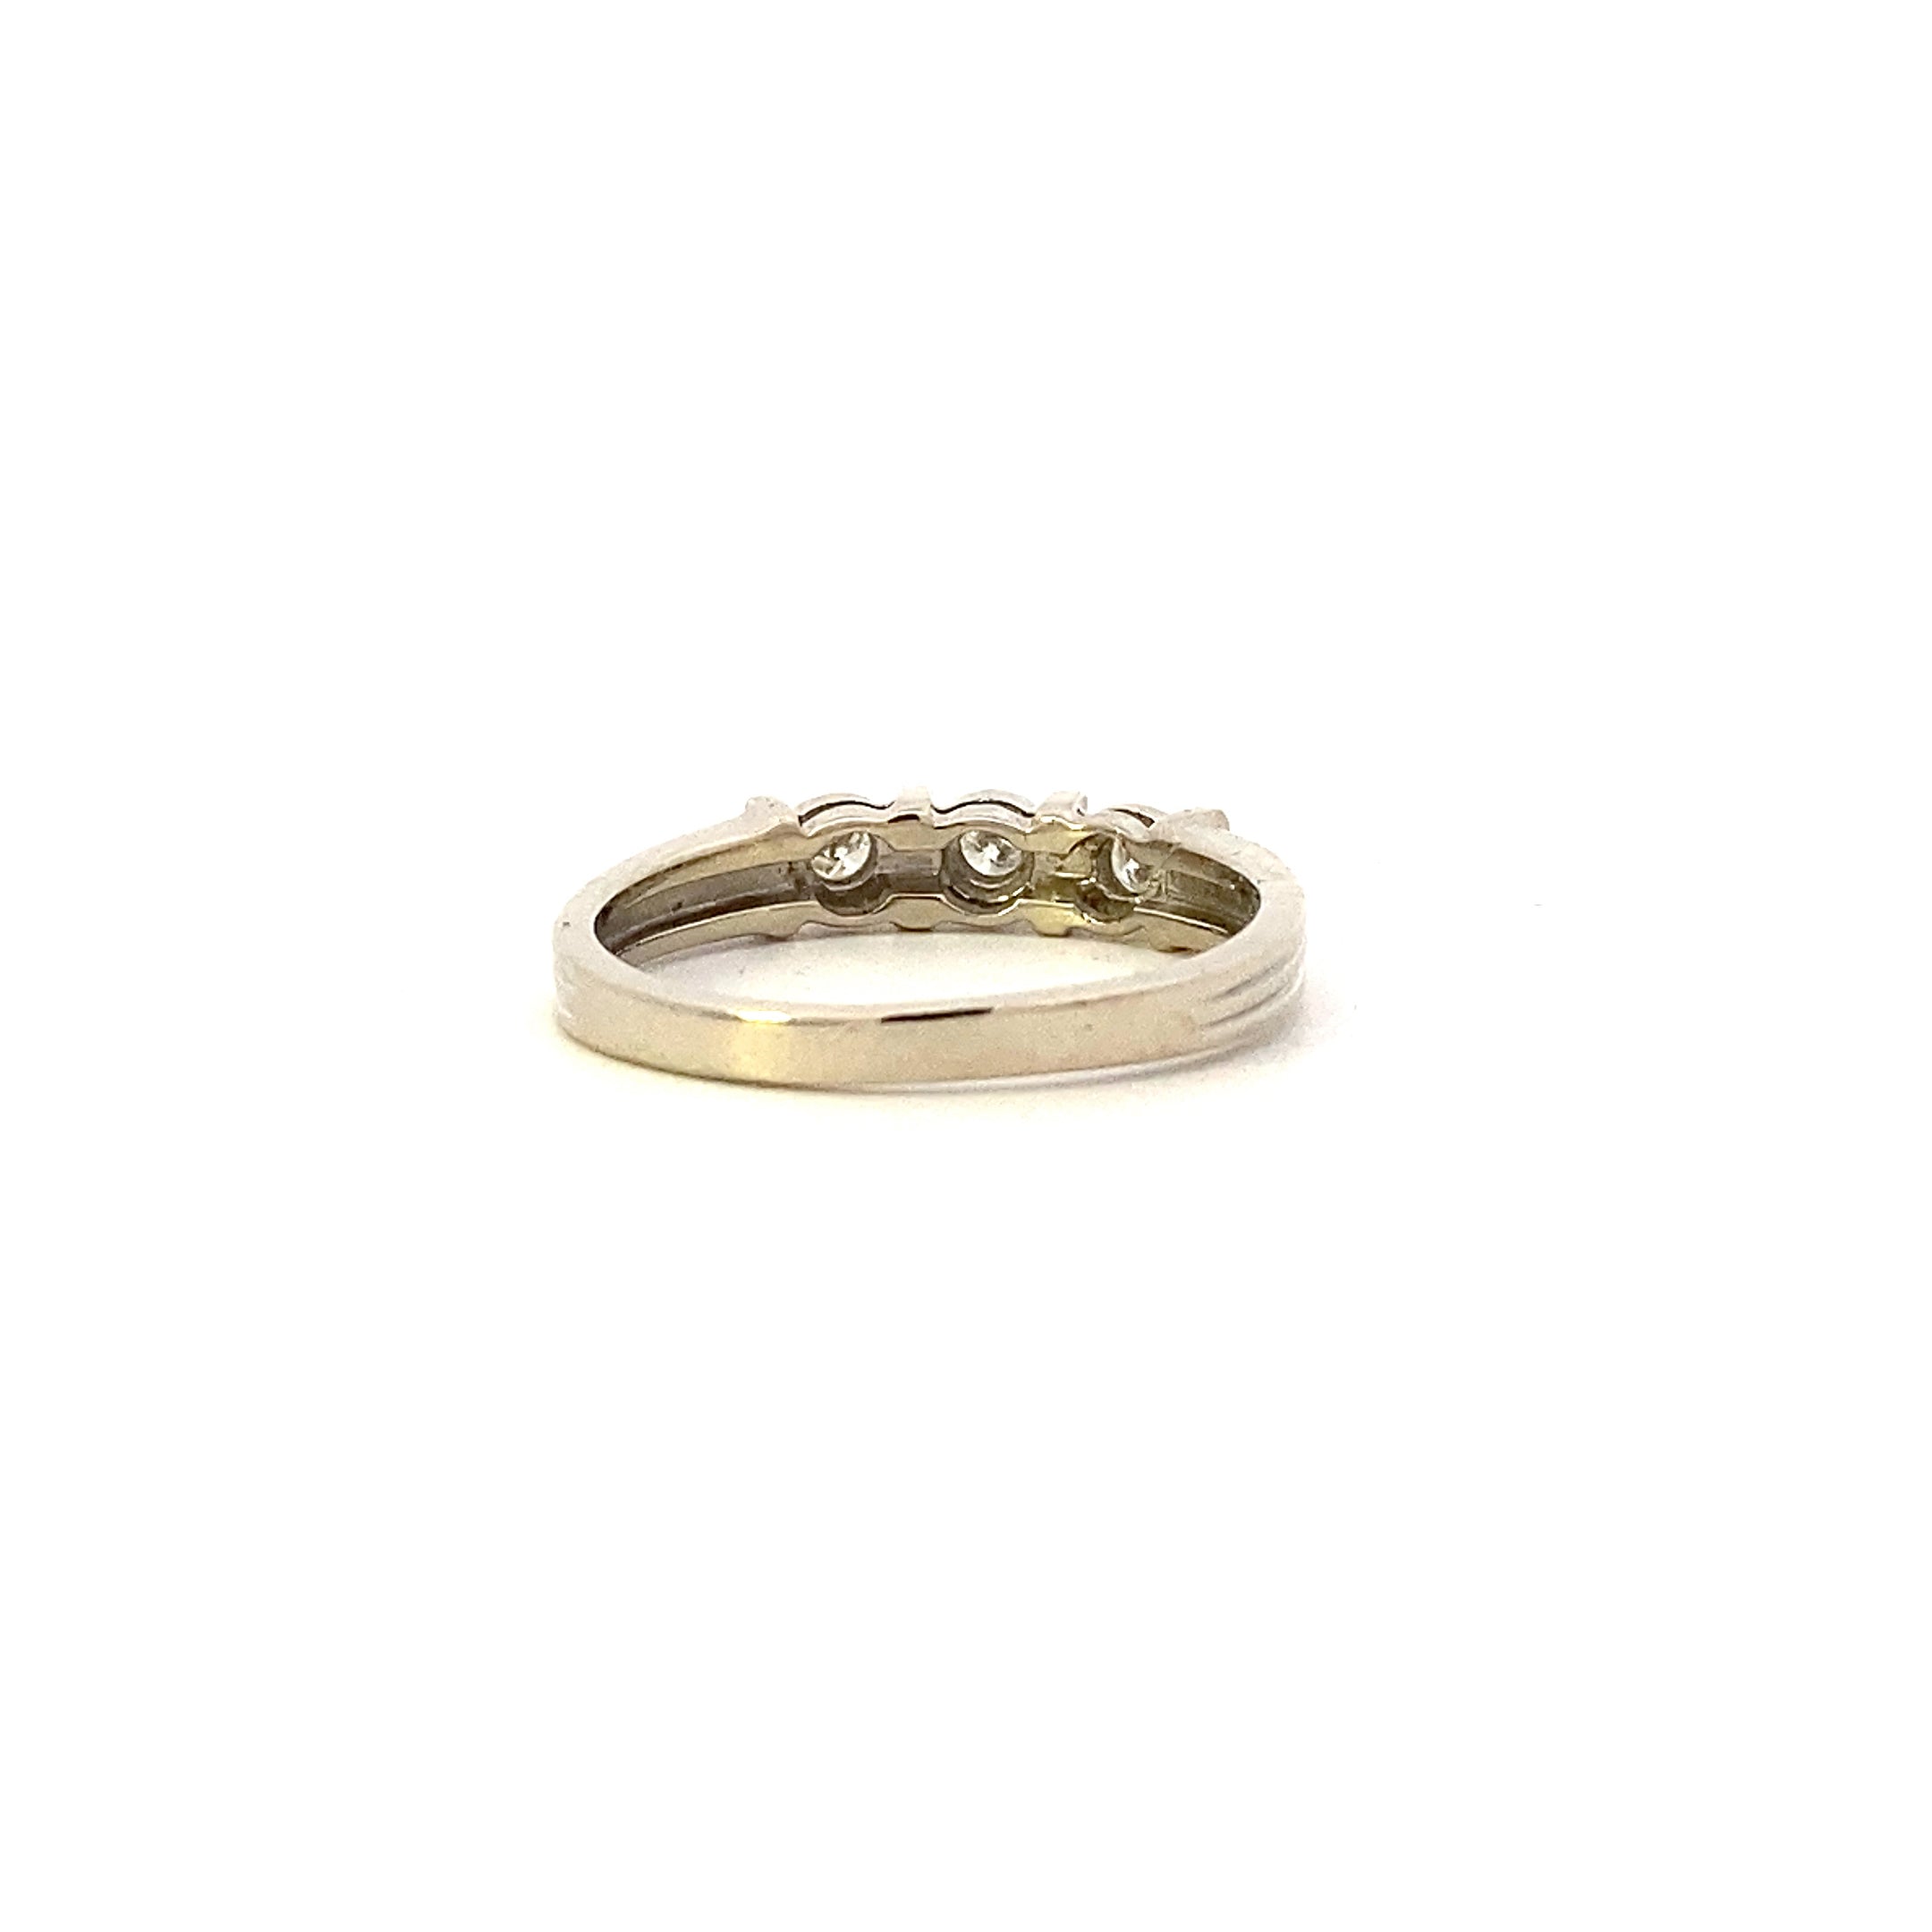 10K White Gold Diamond Ring - 0.15ct